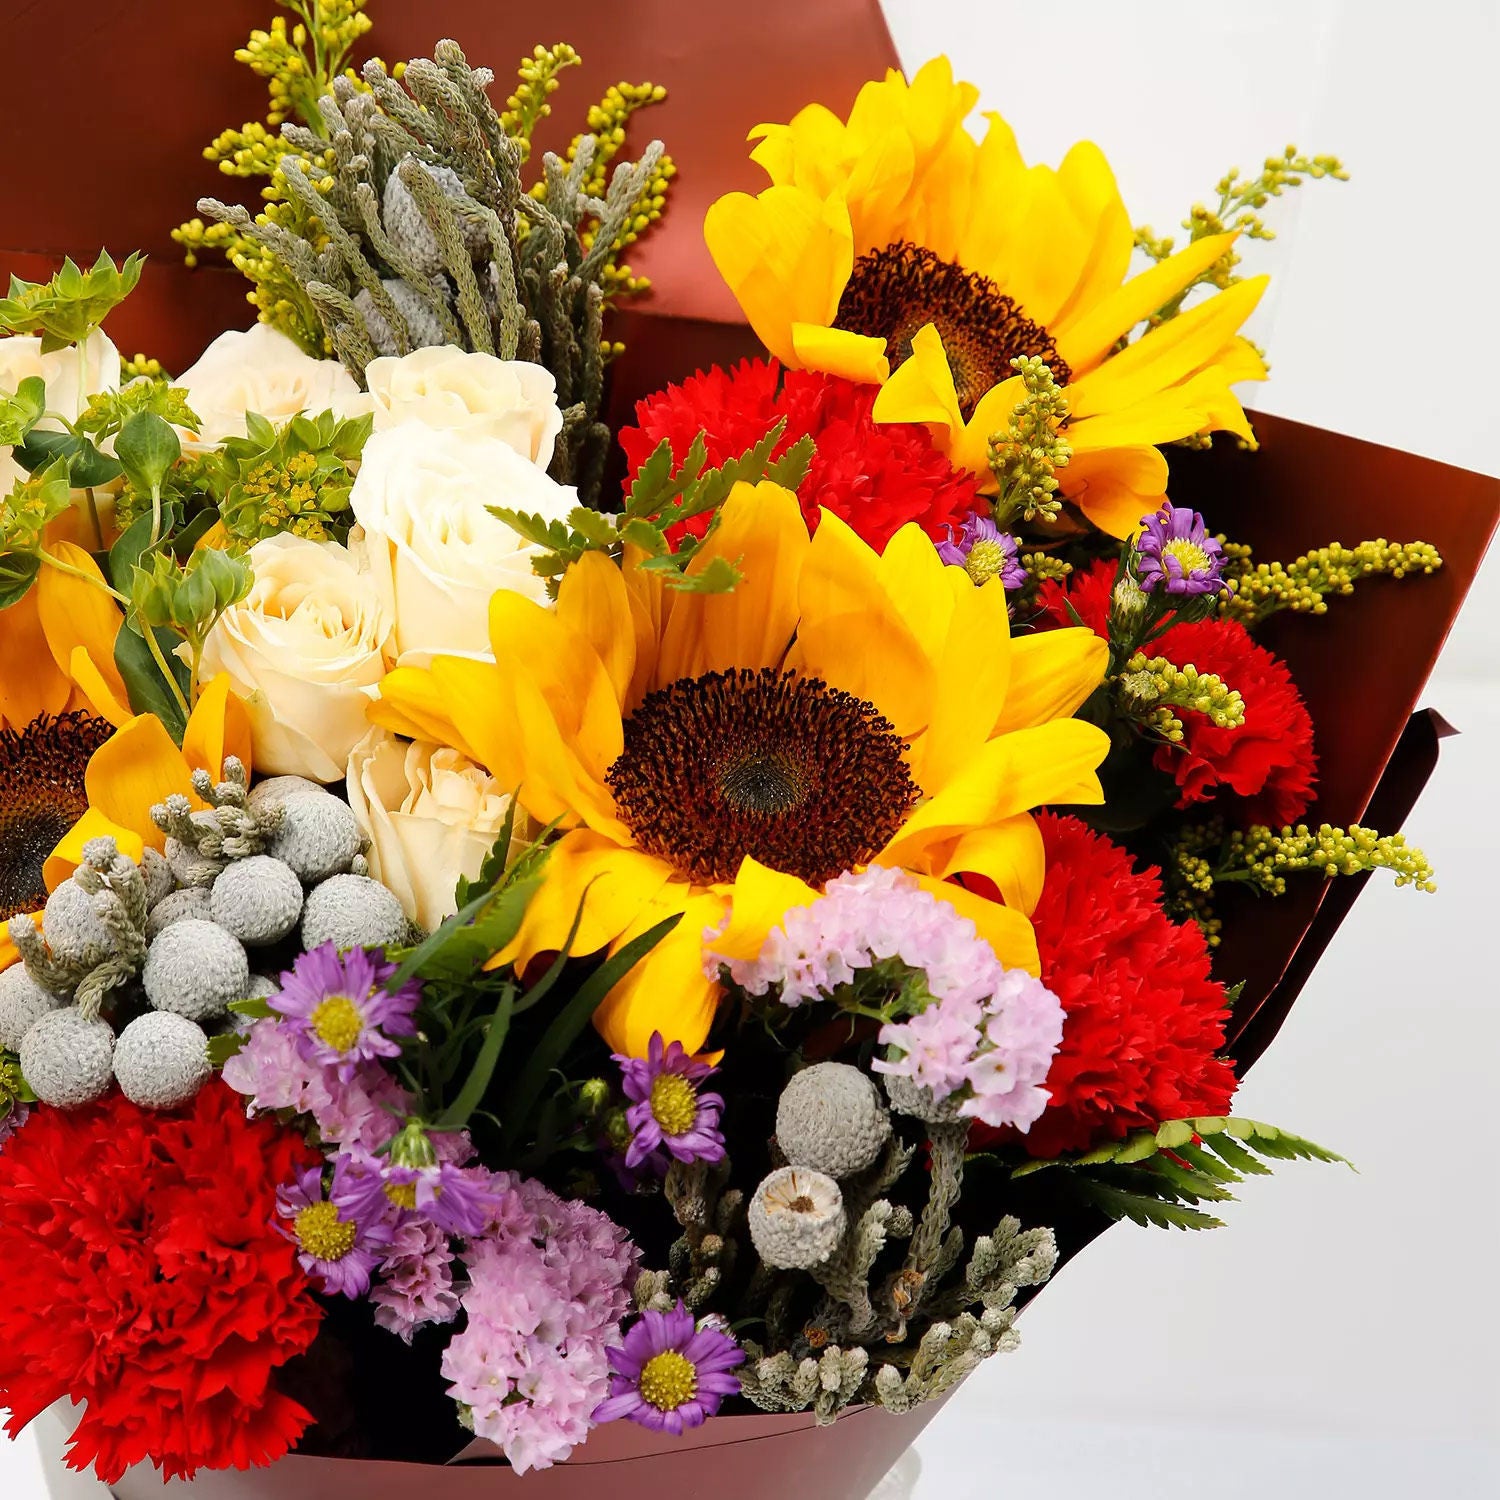 Joyful Bouquet Of Mixed Flowers Standard